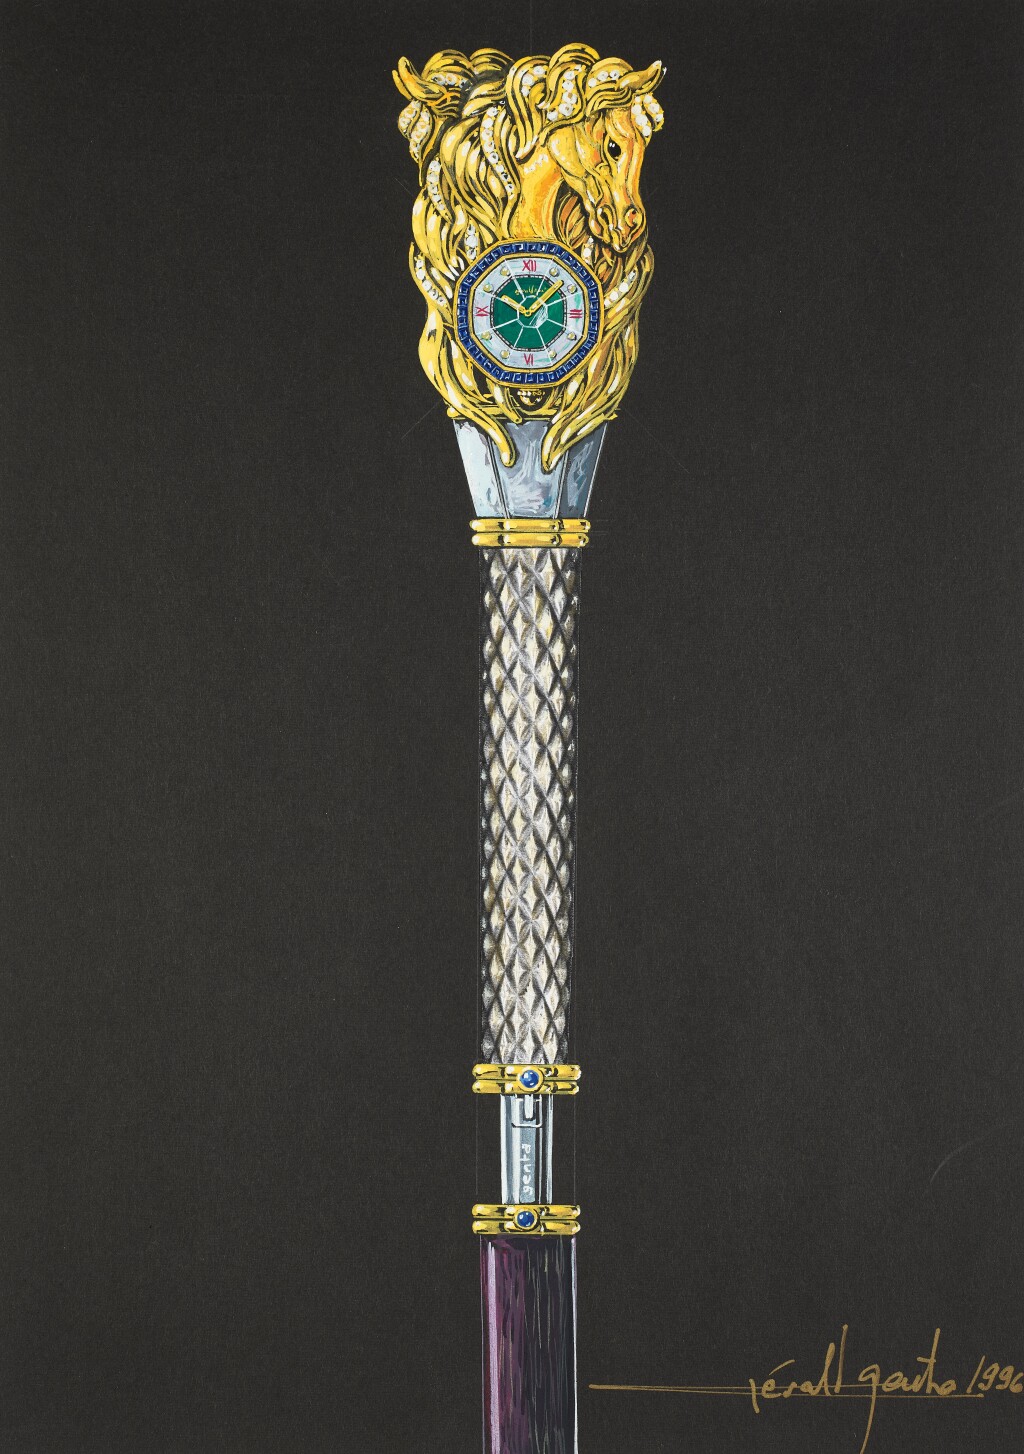 Gerald Genta's design of a sword cane